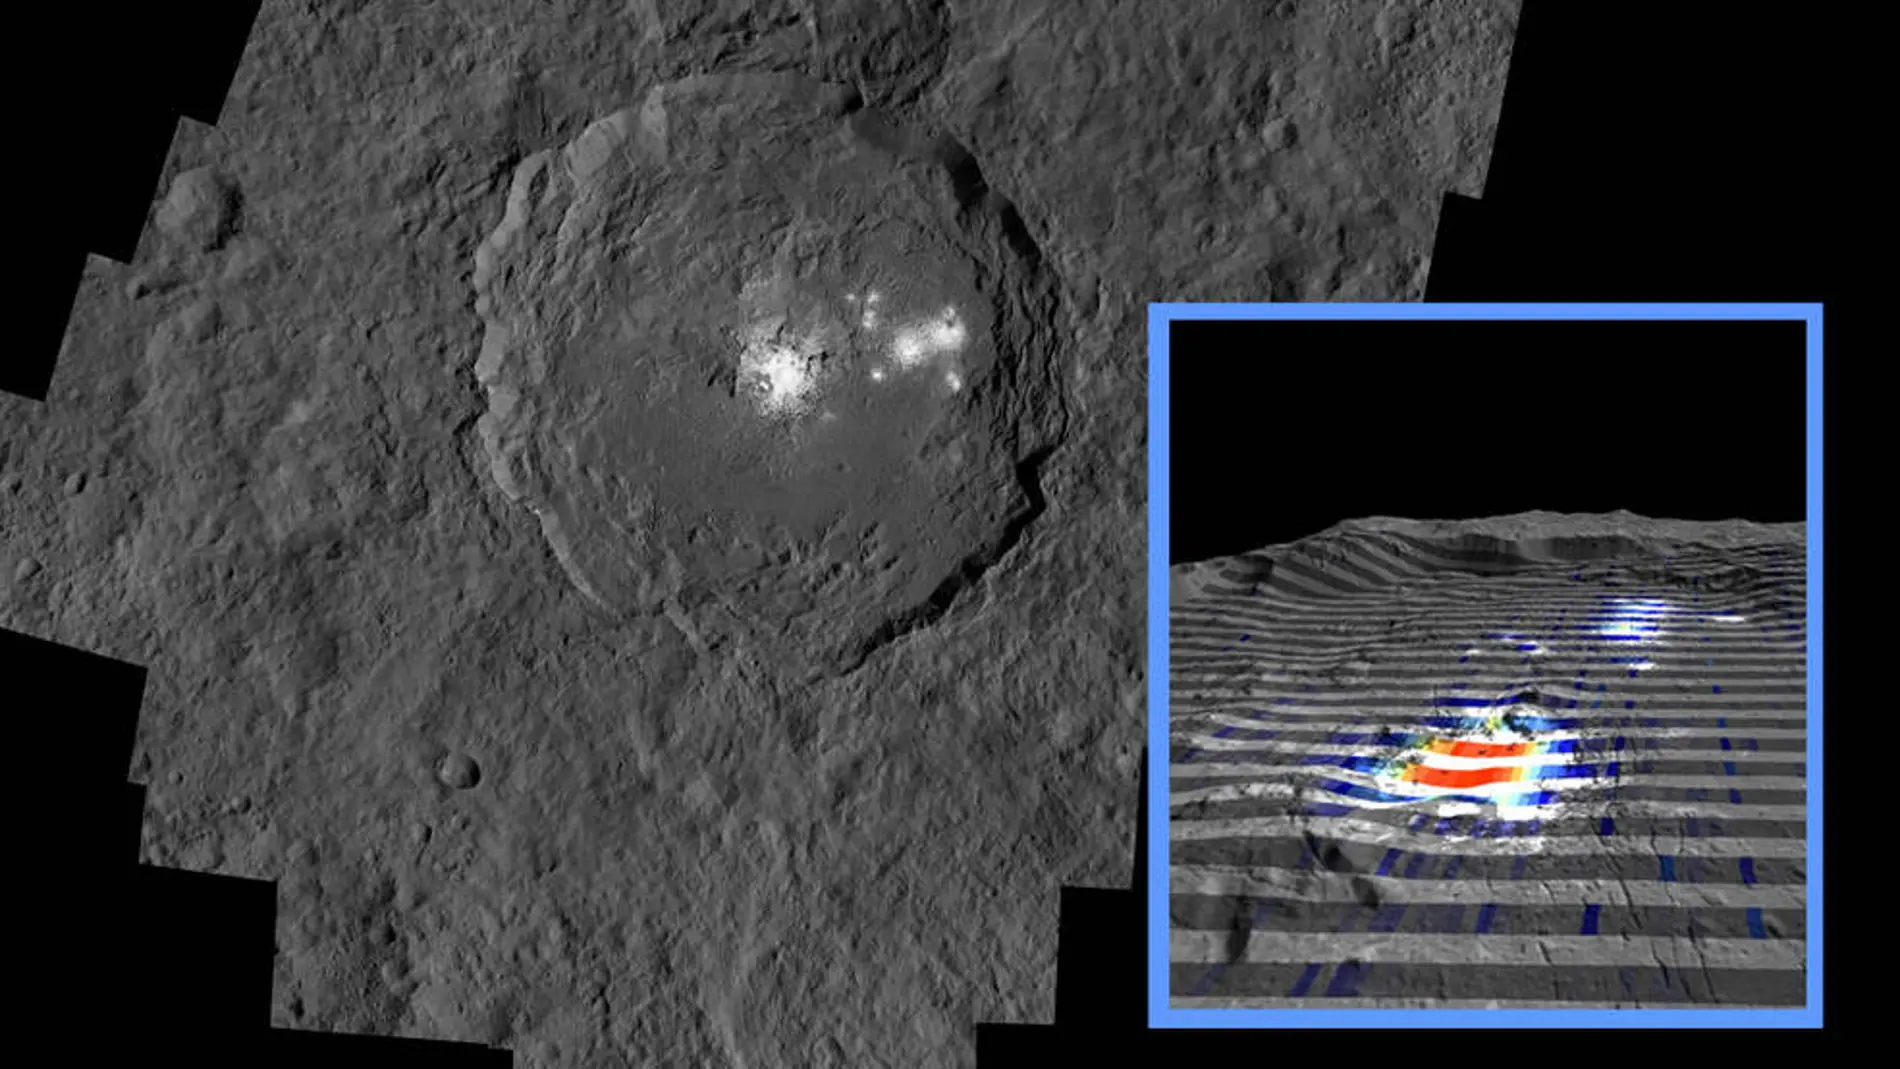 Los puntos brillantes en la superficie de Ceres son principalmente sal